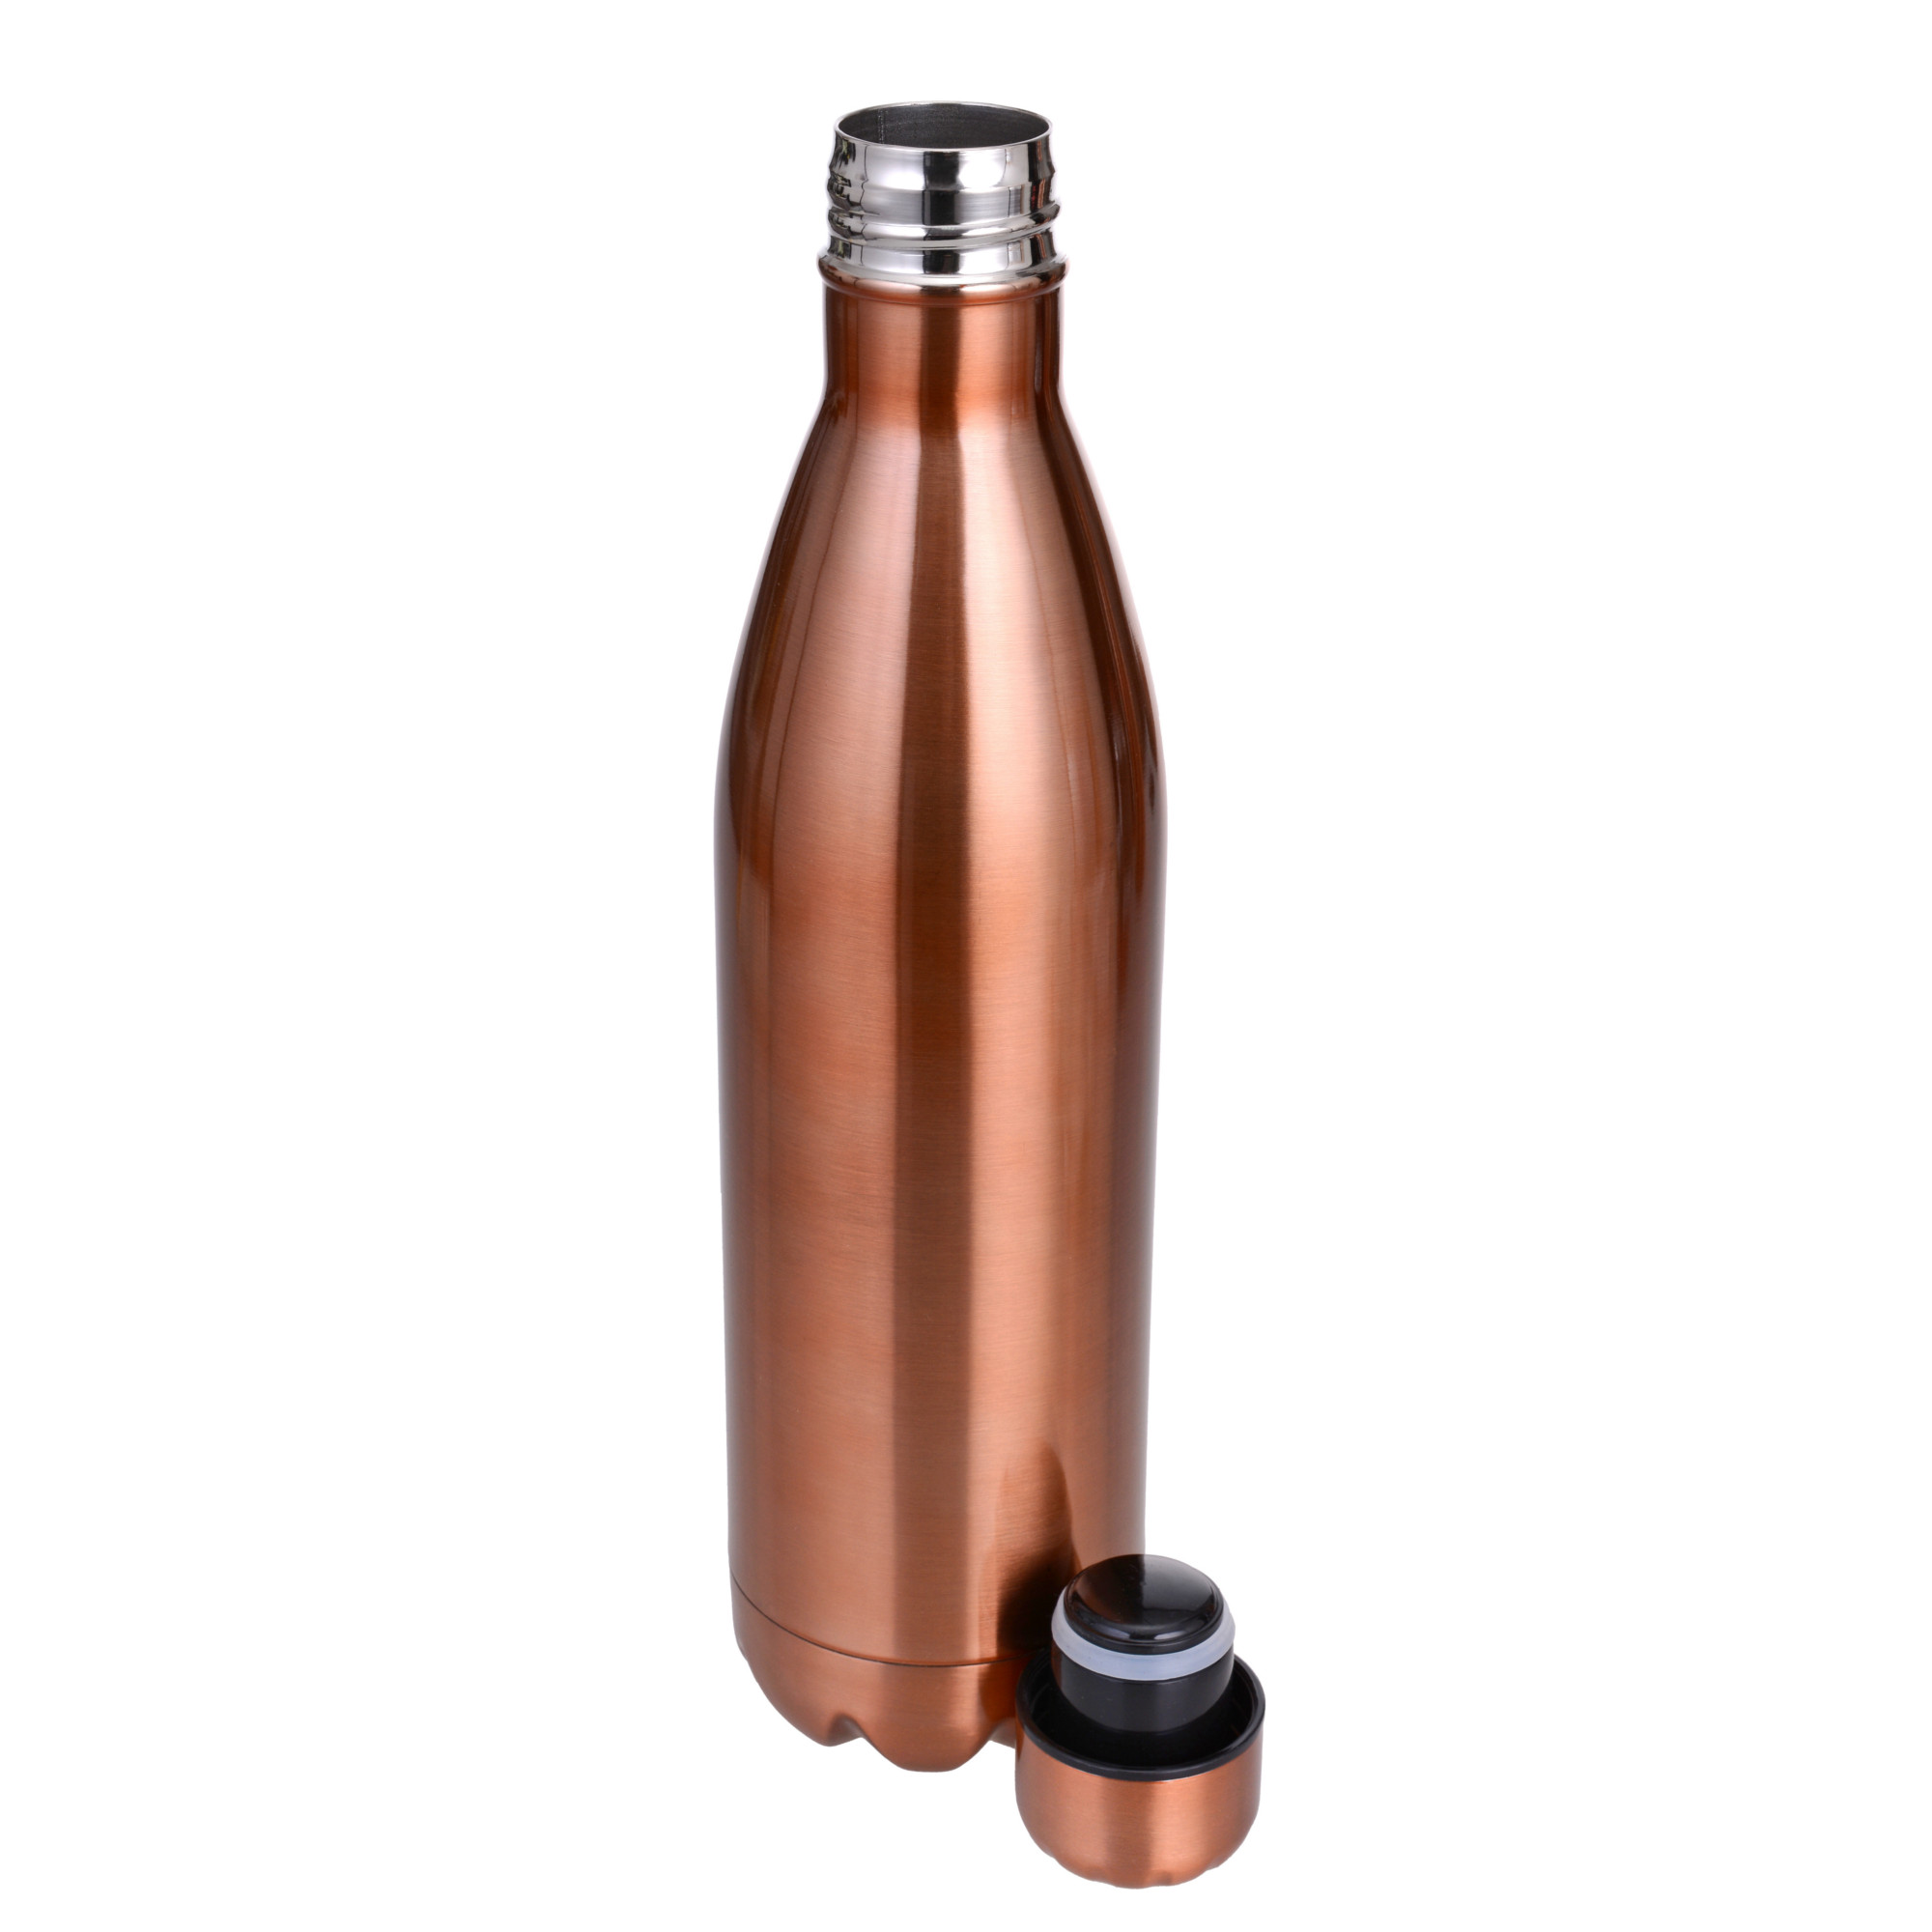 Isolierflasche 750 ml, Kupferfarben/Edelstahl, Serie Thermohome  